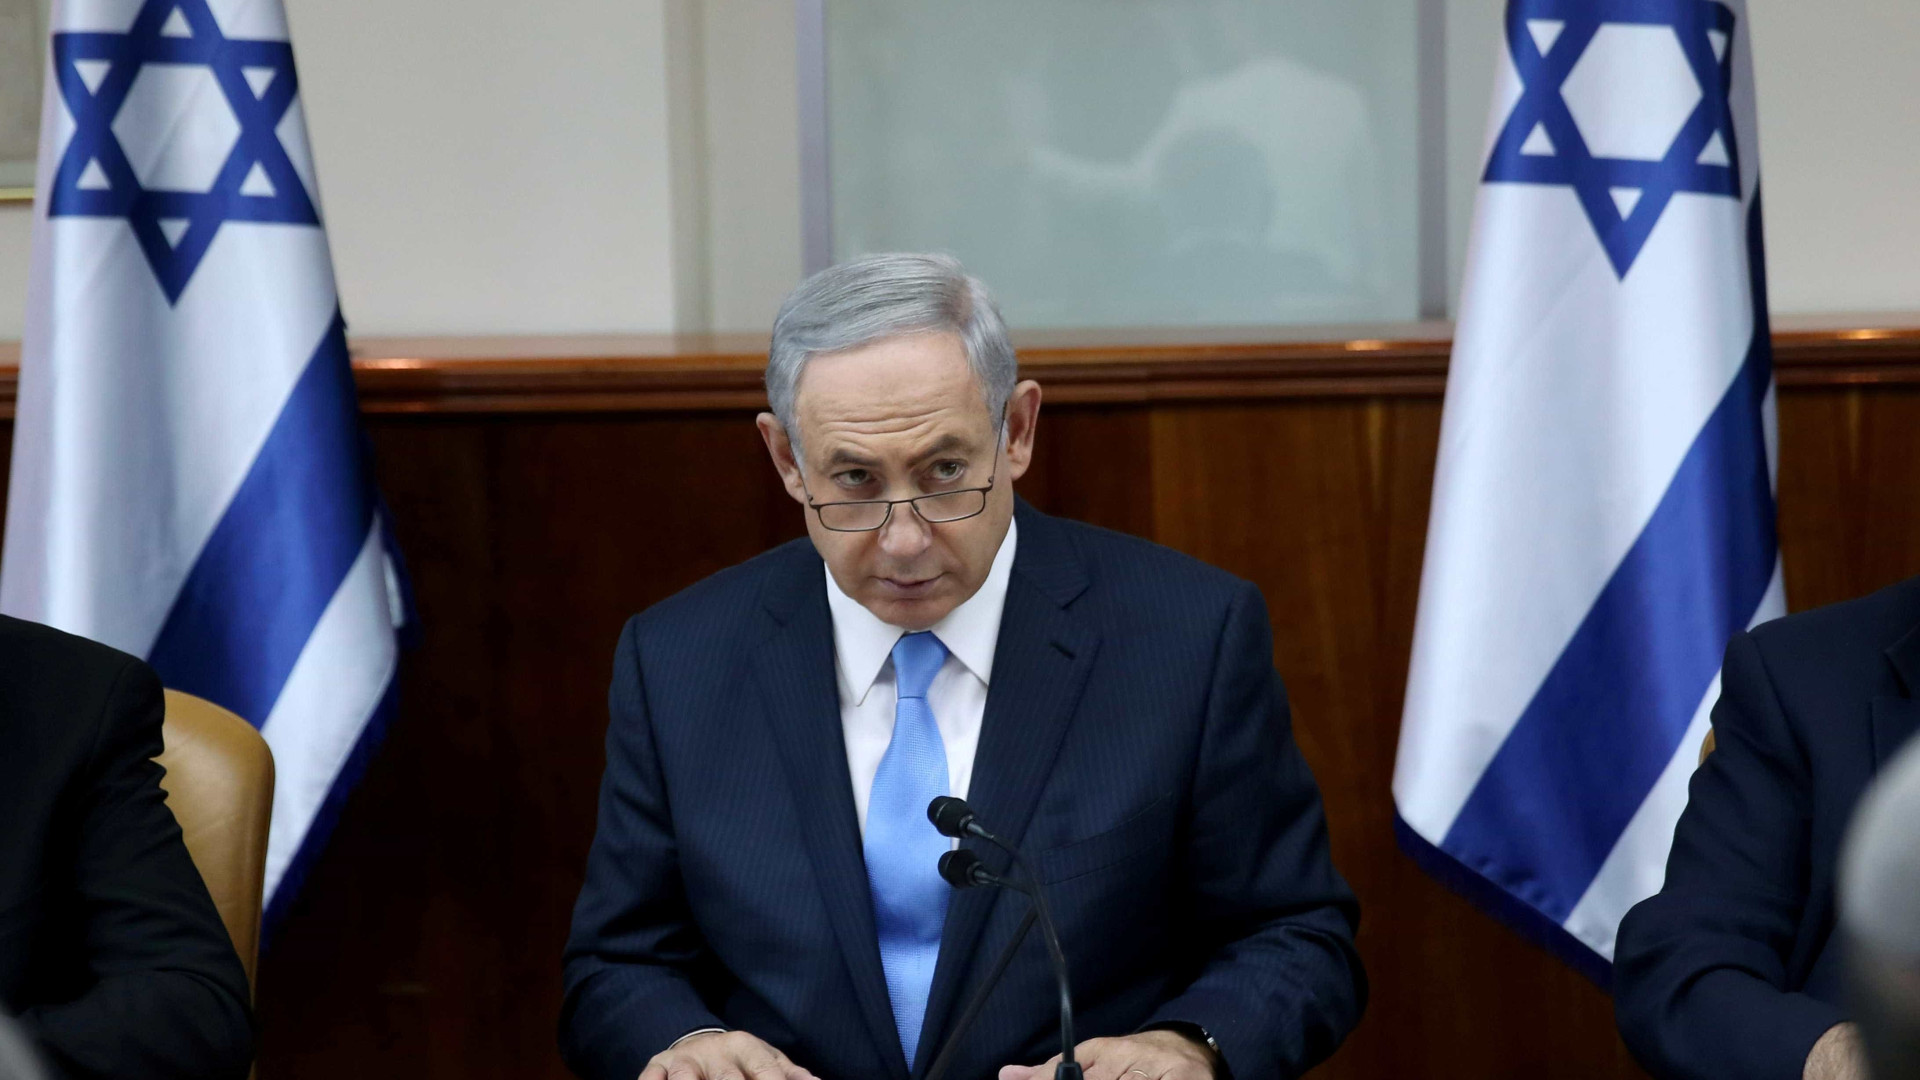 Netanyahu chamará embaixador 
na Unesco para consultas